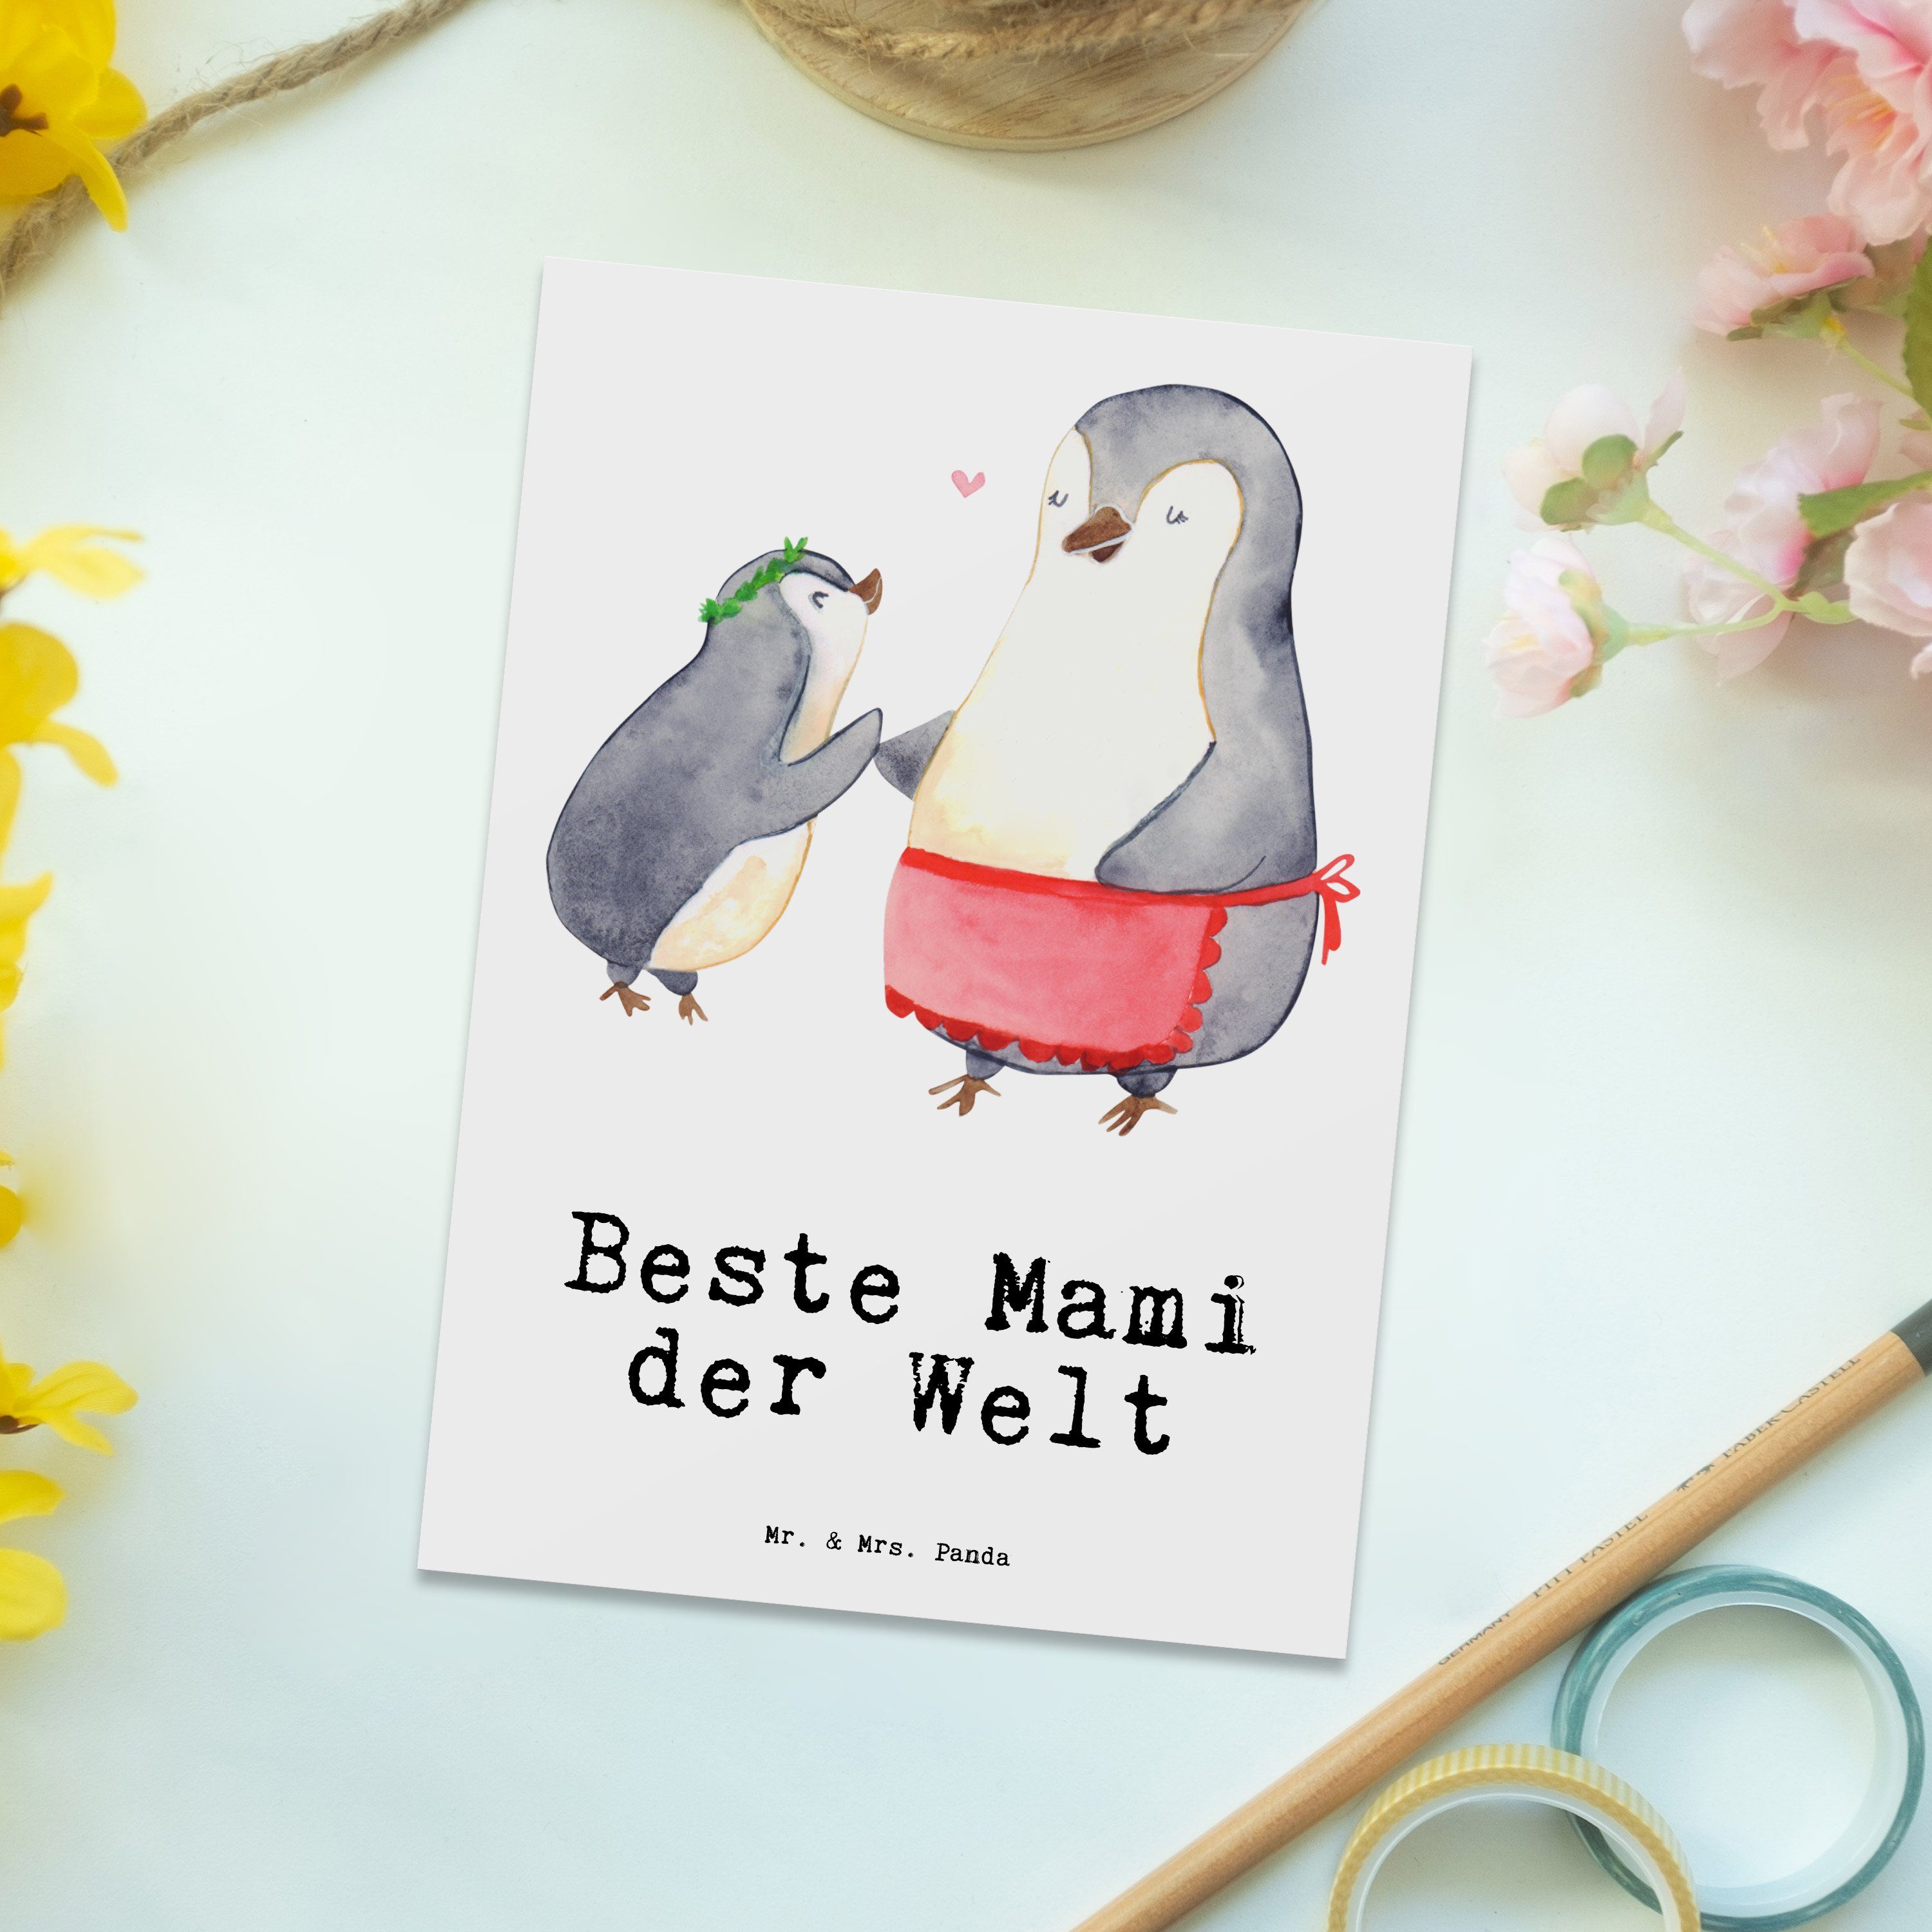 Mr. & Mrs. Panda Postkarte Beste - der Grußkarte - Mami Pinguin Beste Mama, Welt Geschenk, Weiß